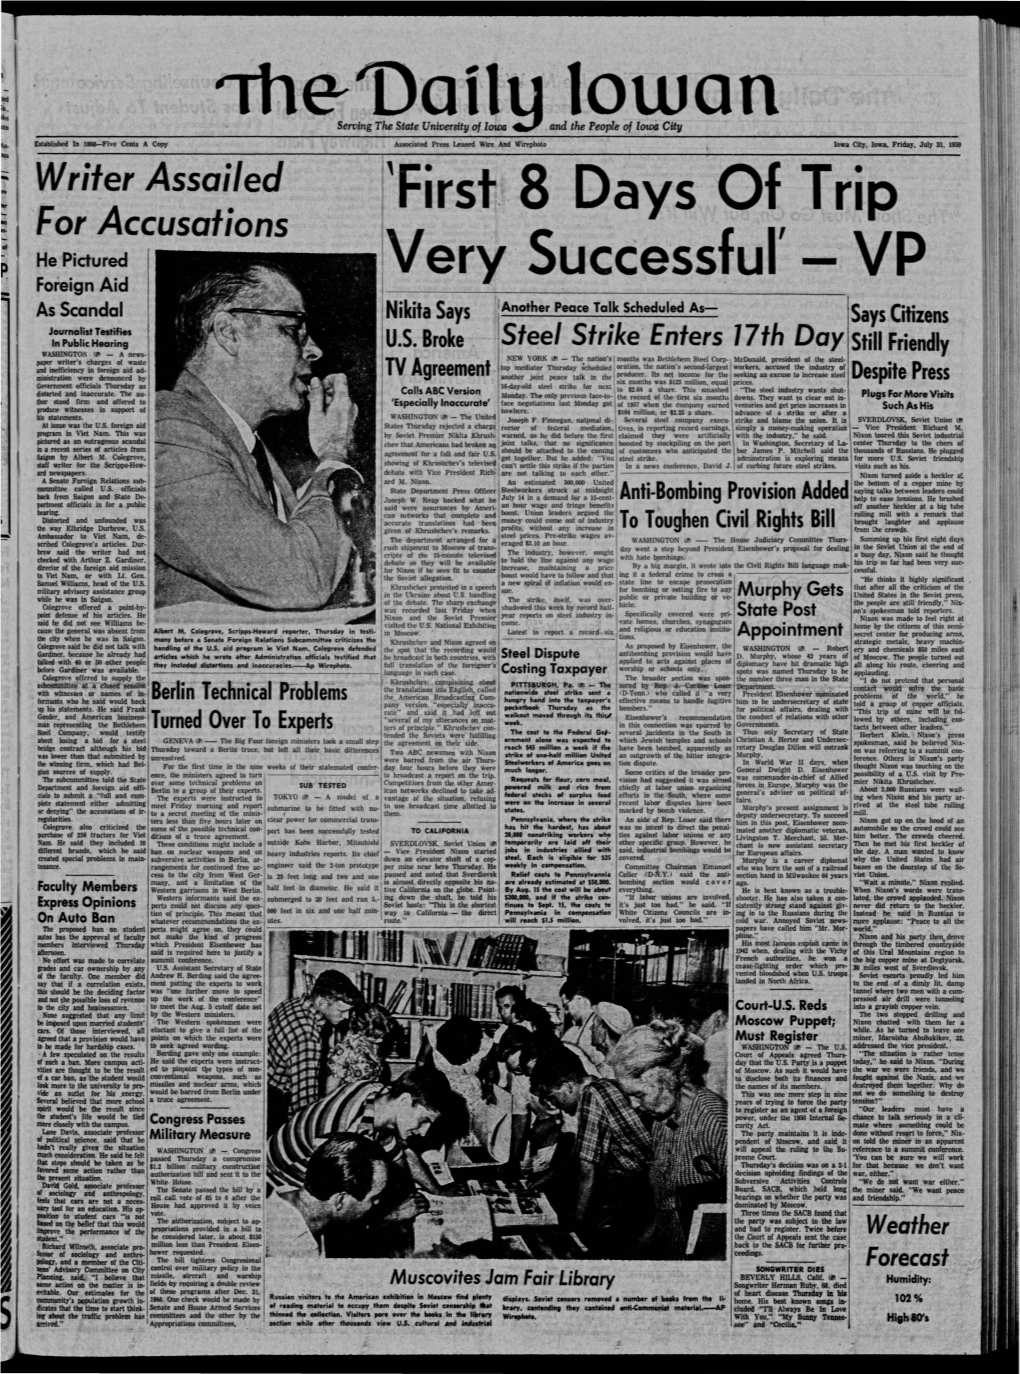 Daily Iowan (Iowa City, Iowa), 1959-07-31